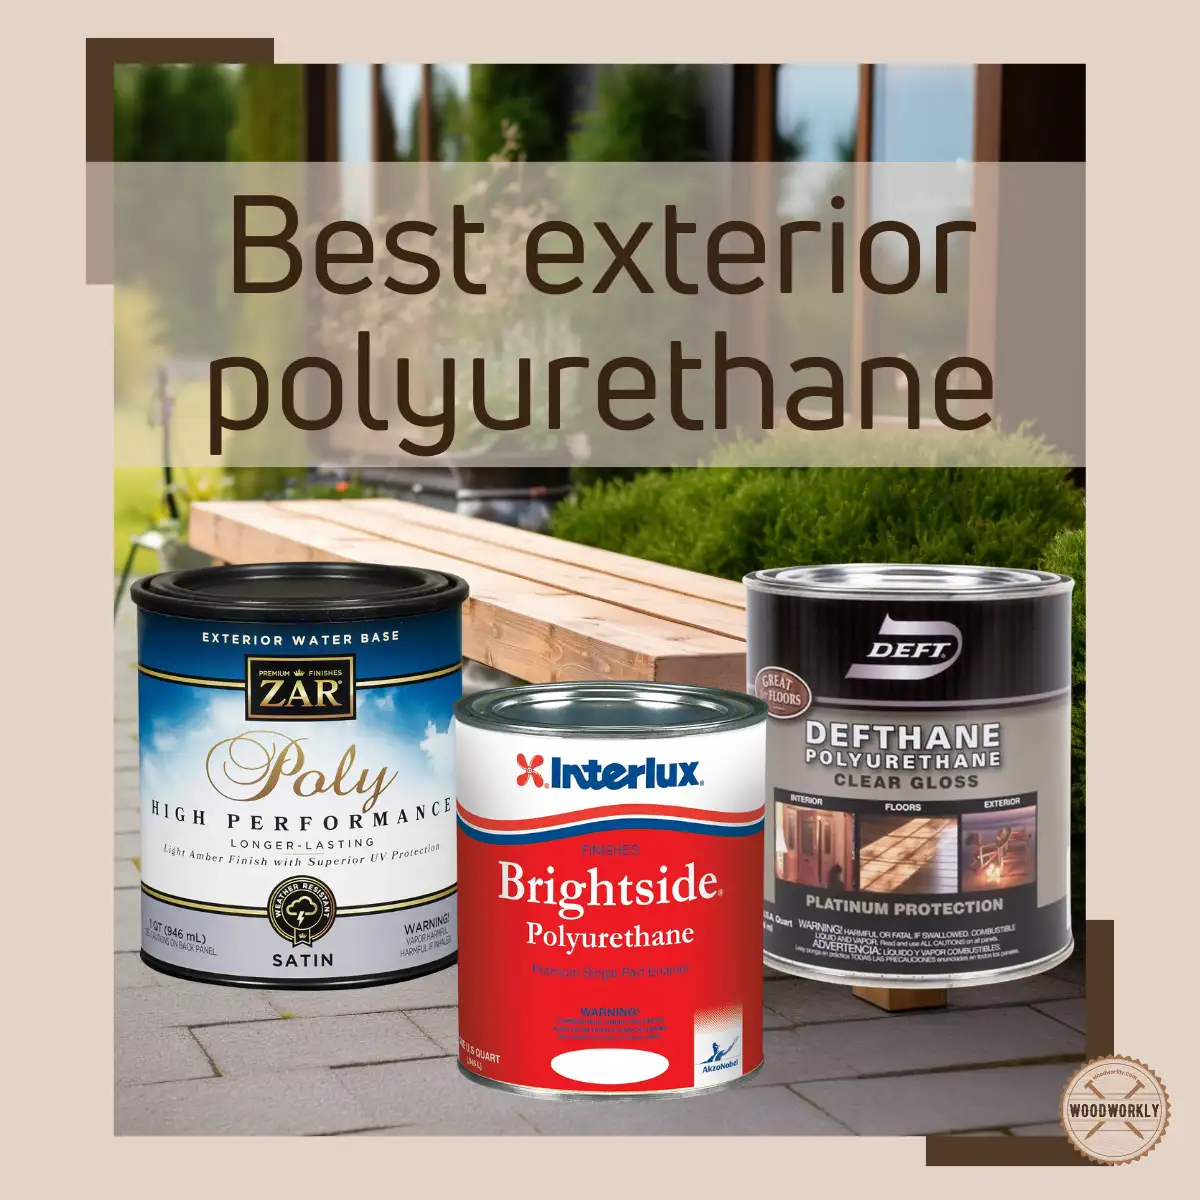 Best exterior polyurethane